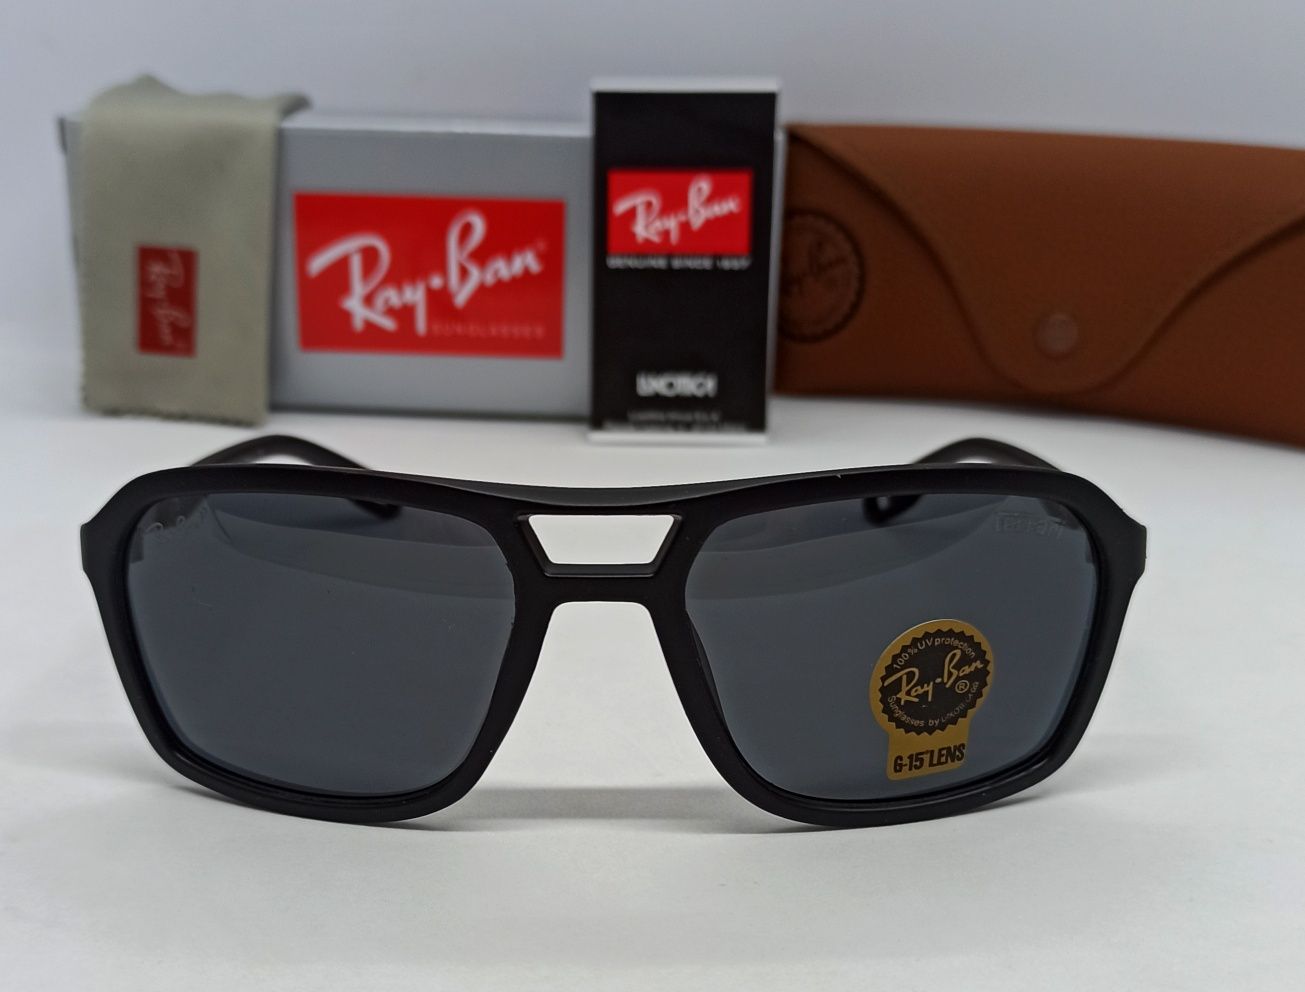 Ray Ban Ferrari очки  мужские черные матовые поляризирован дужки метал